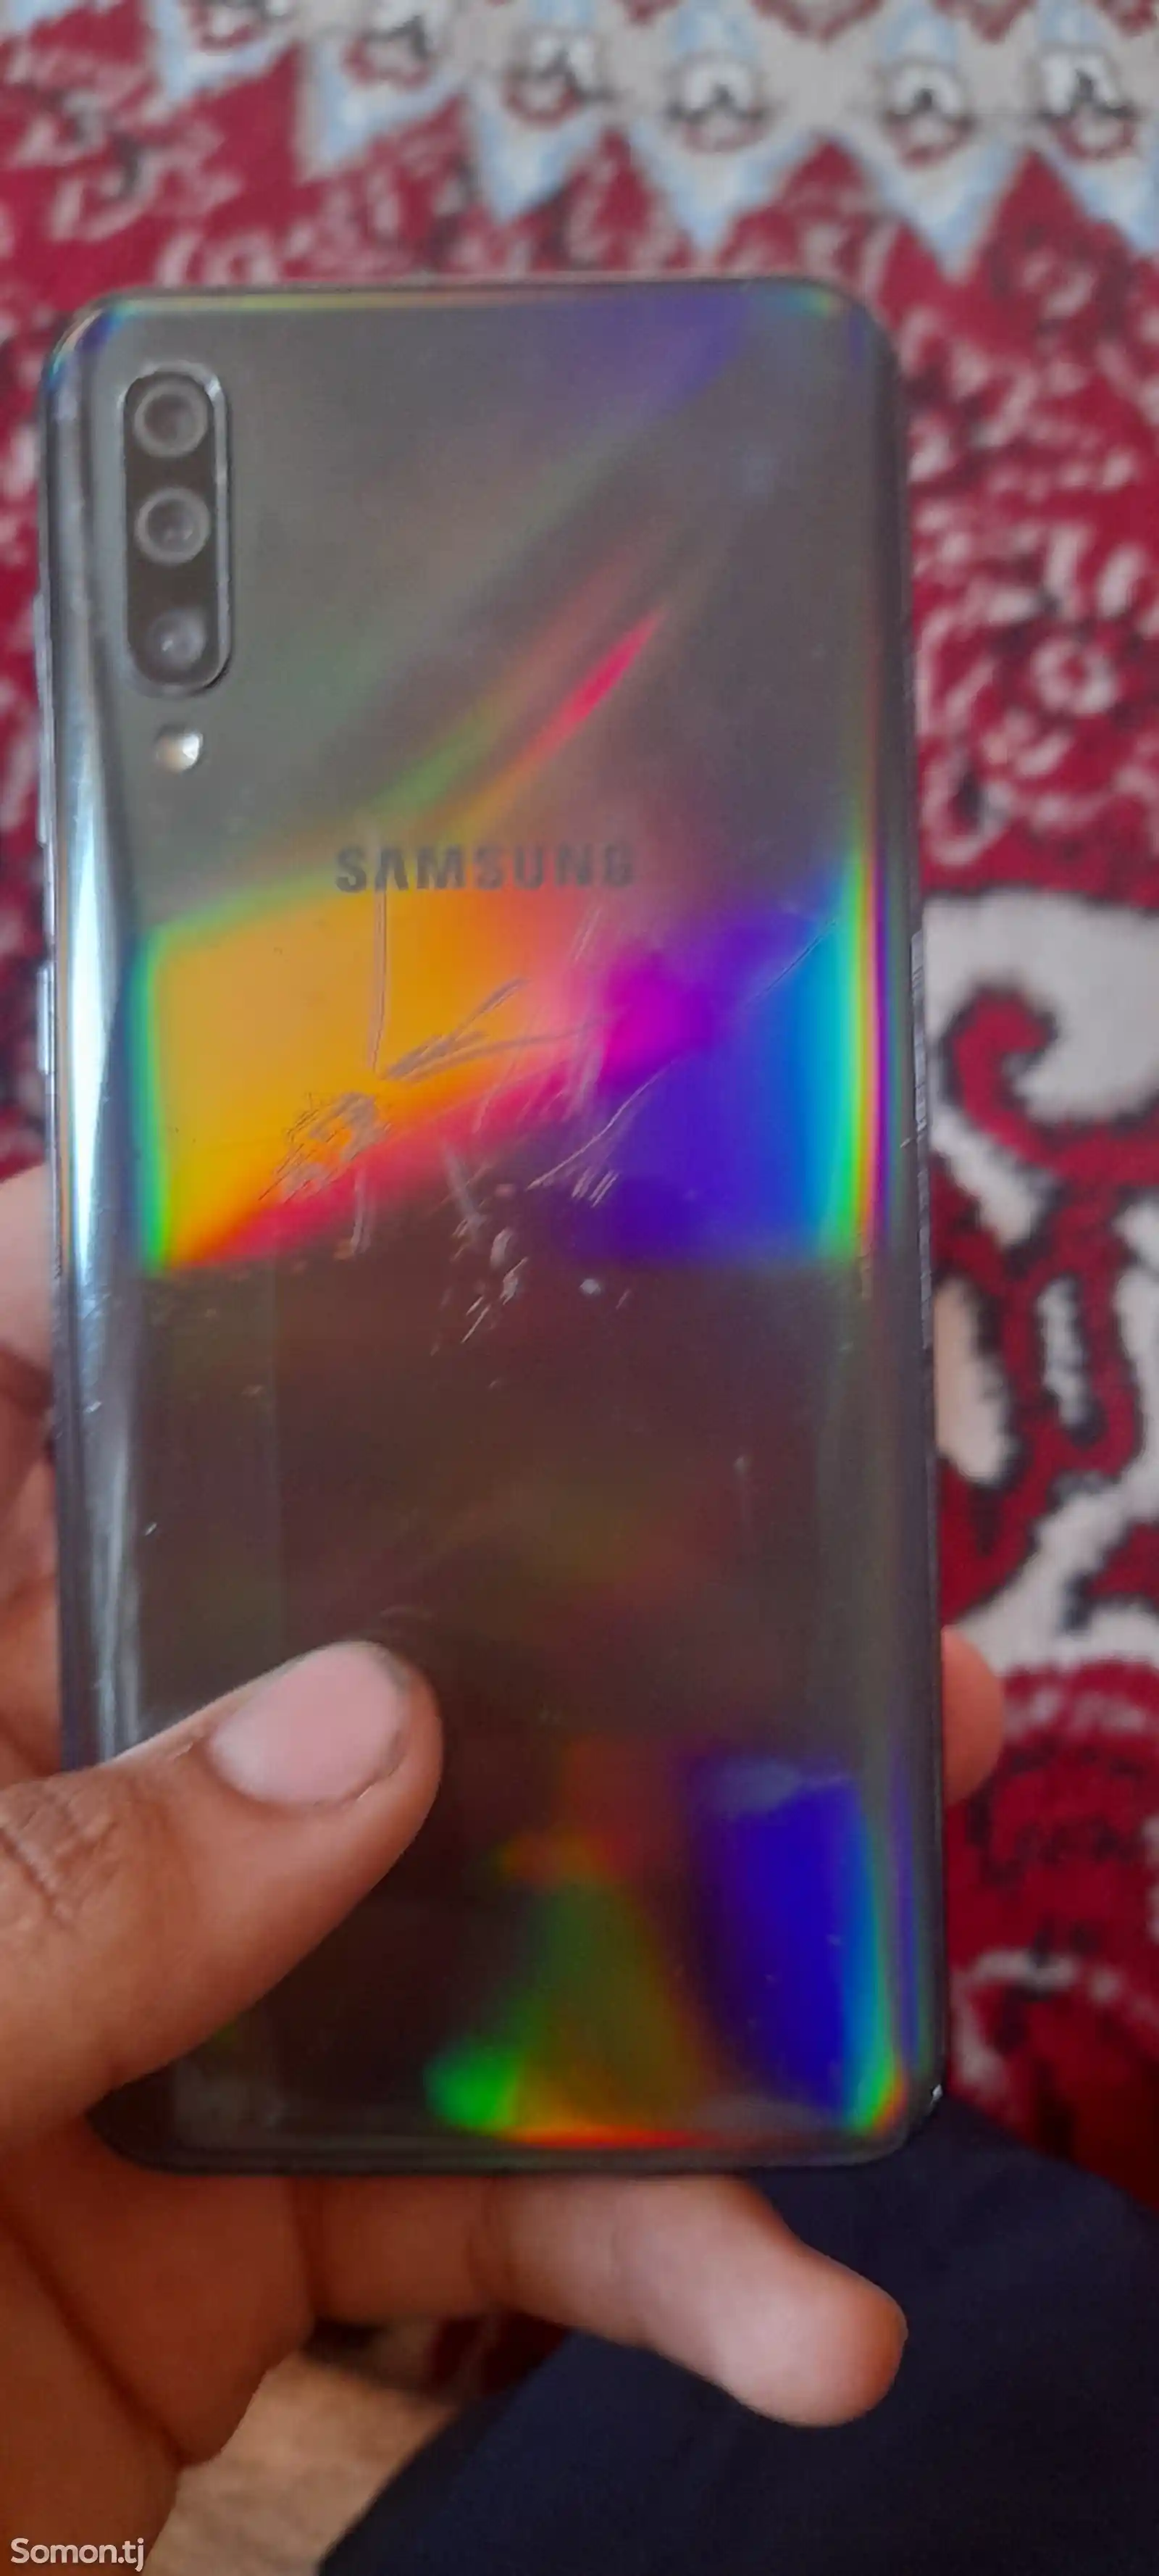 Samsung Galaxy A50-4